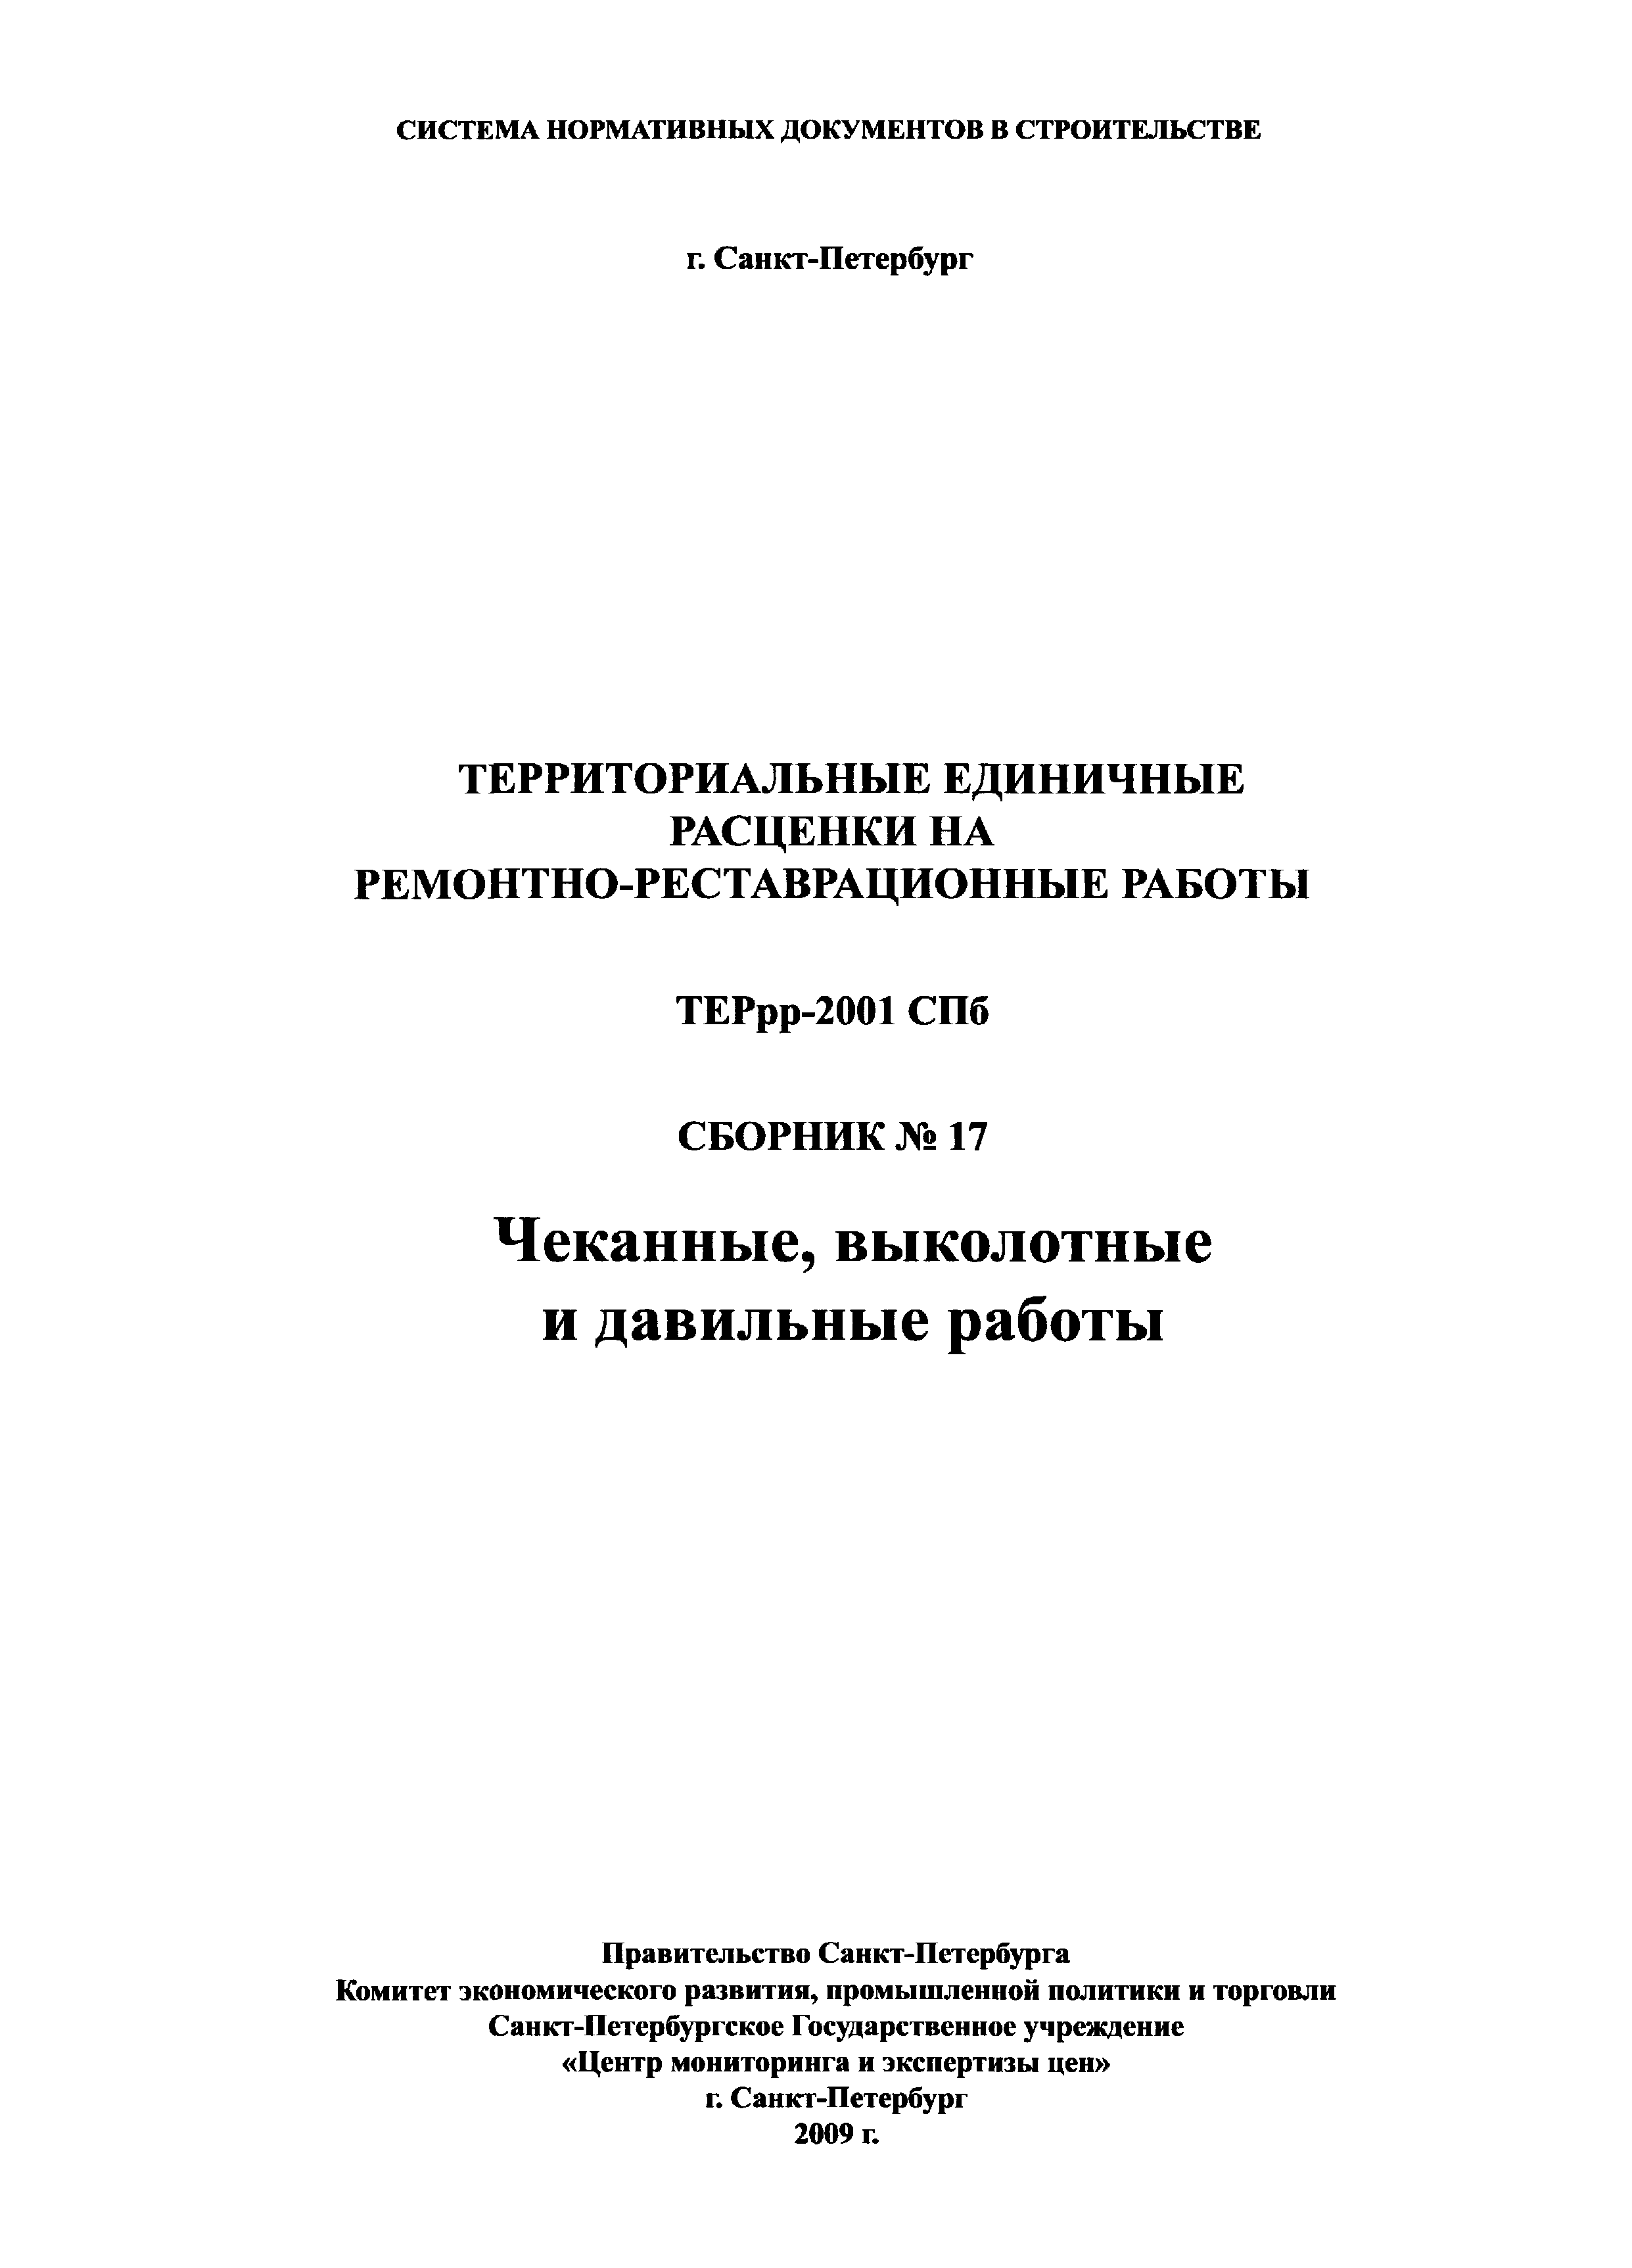 ТЕРрр 2001-17 СПб